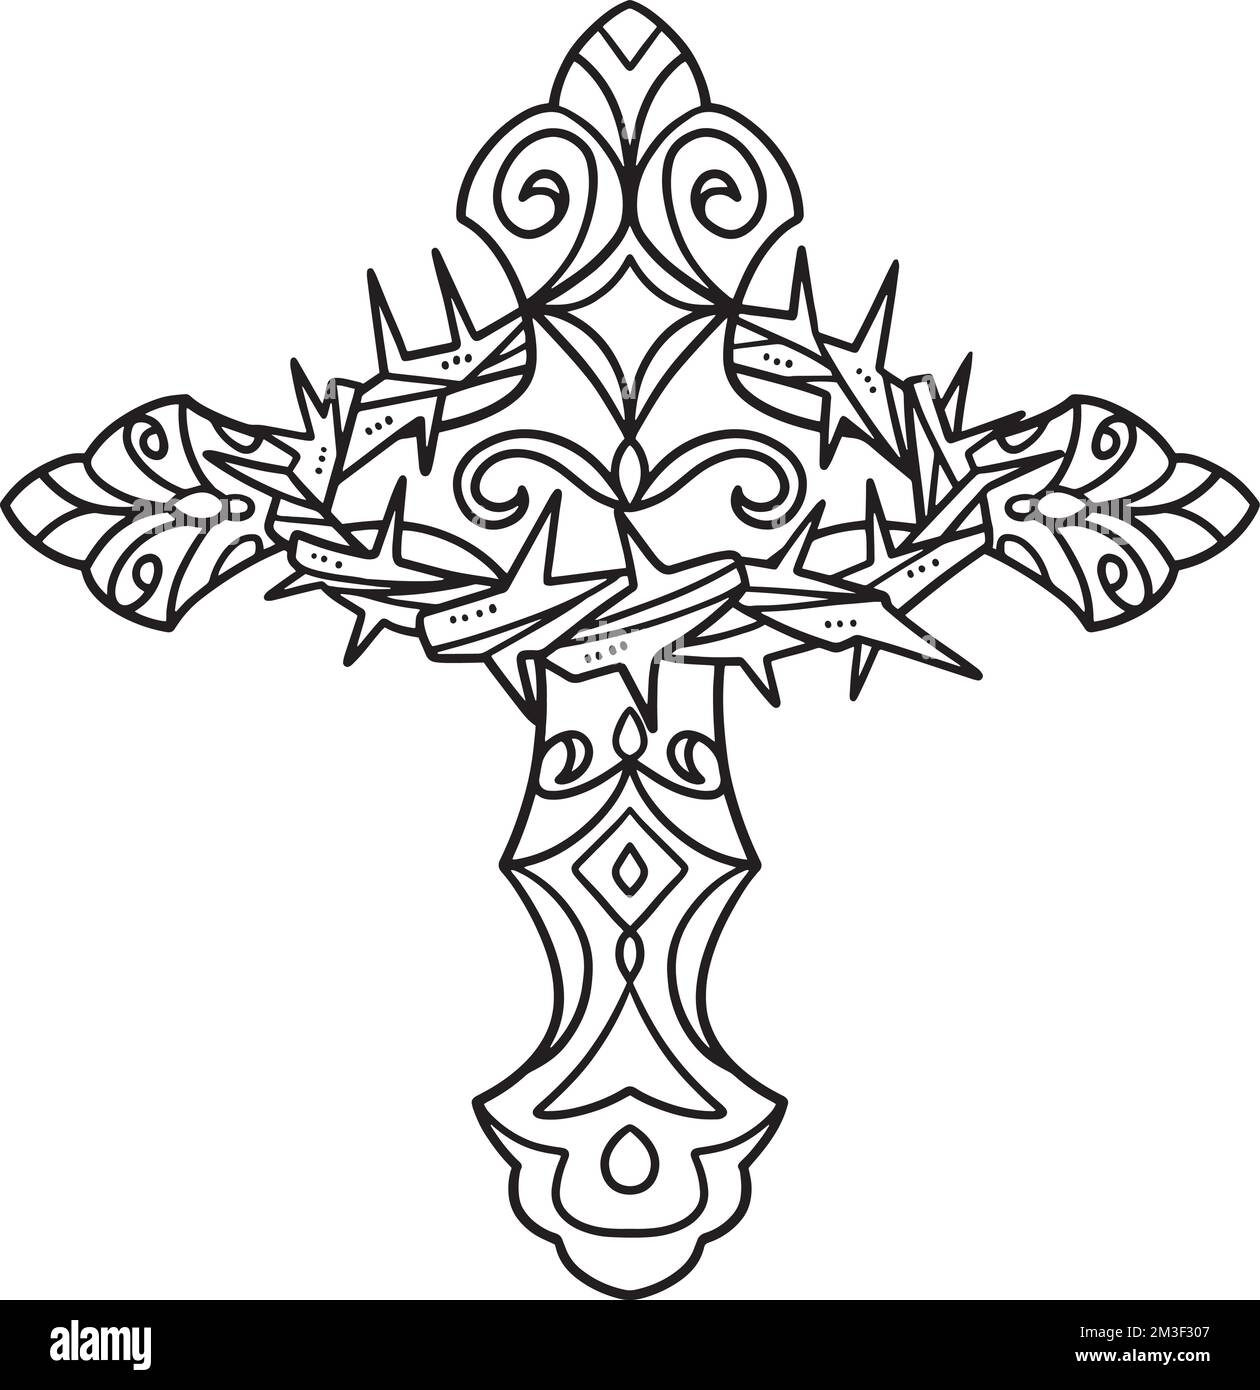 Croix chrétienne avec couronne de Thorns isolée Illustration de Vecteur